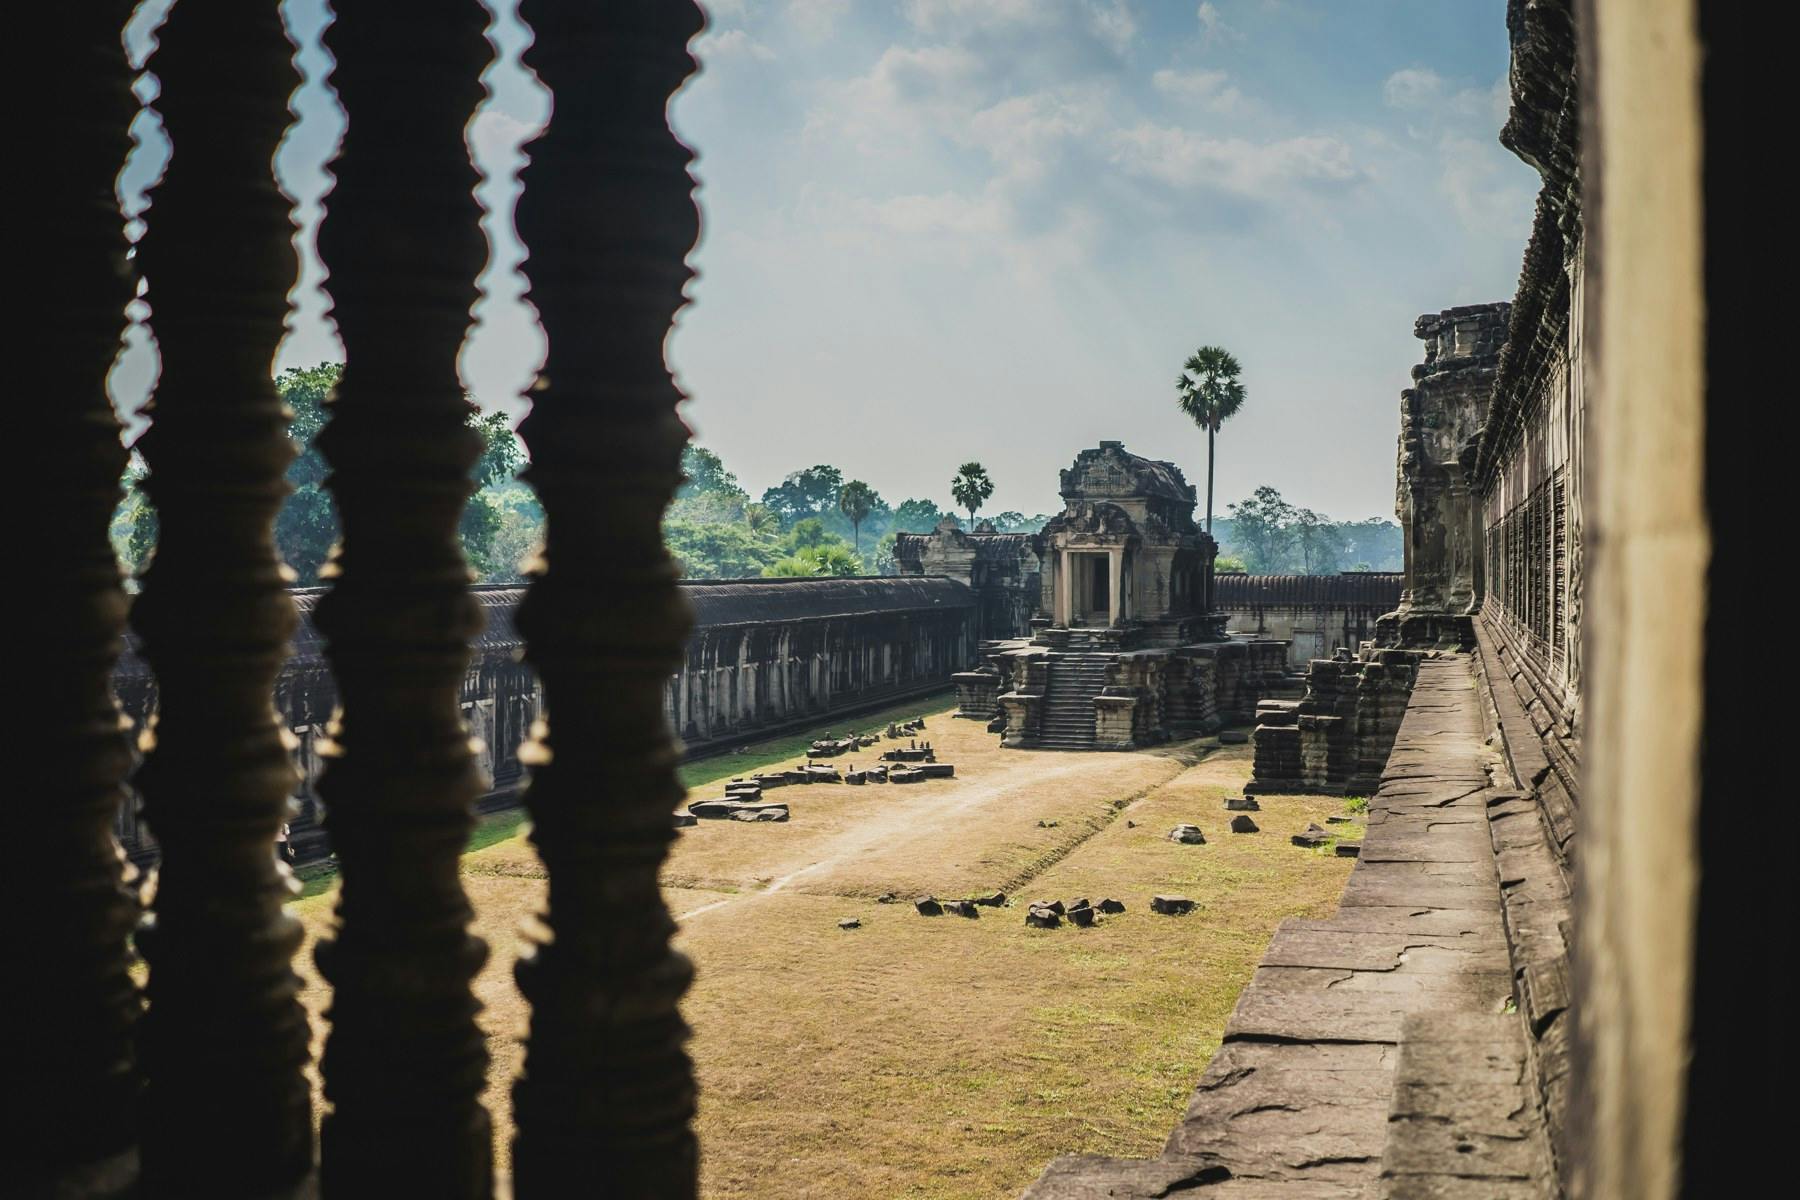 Angkor Whut?